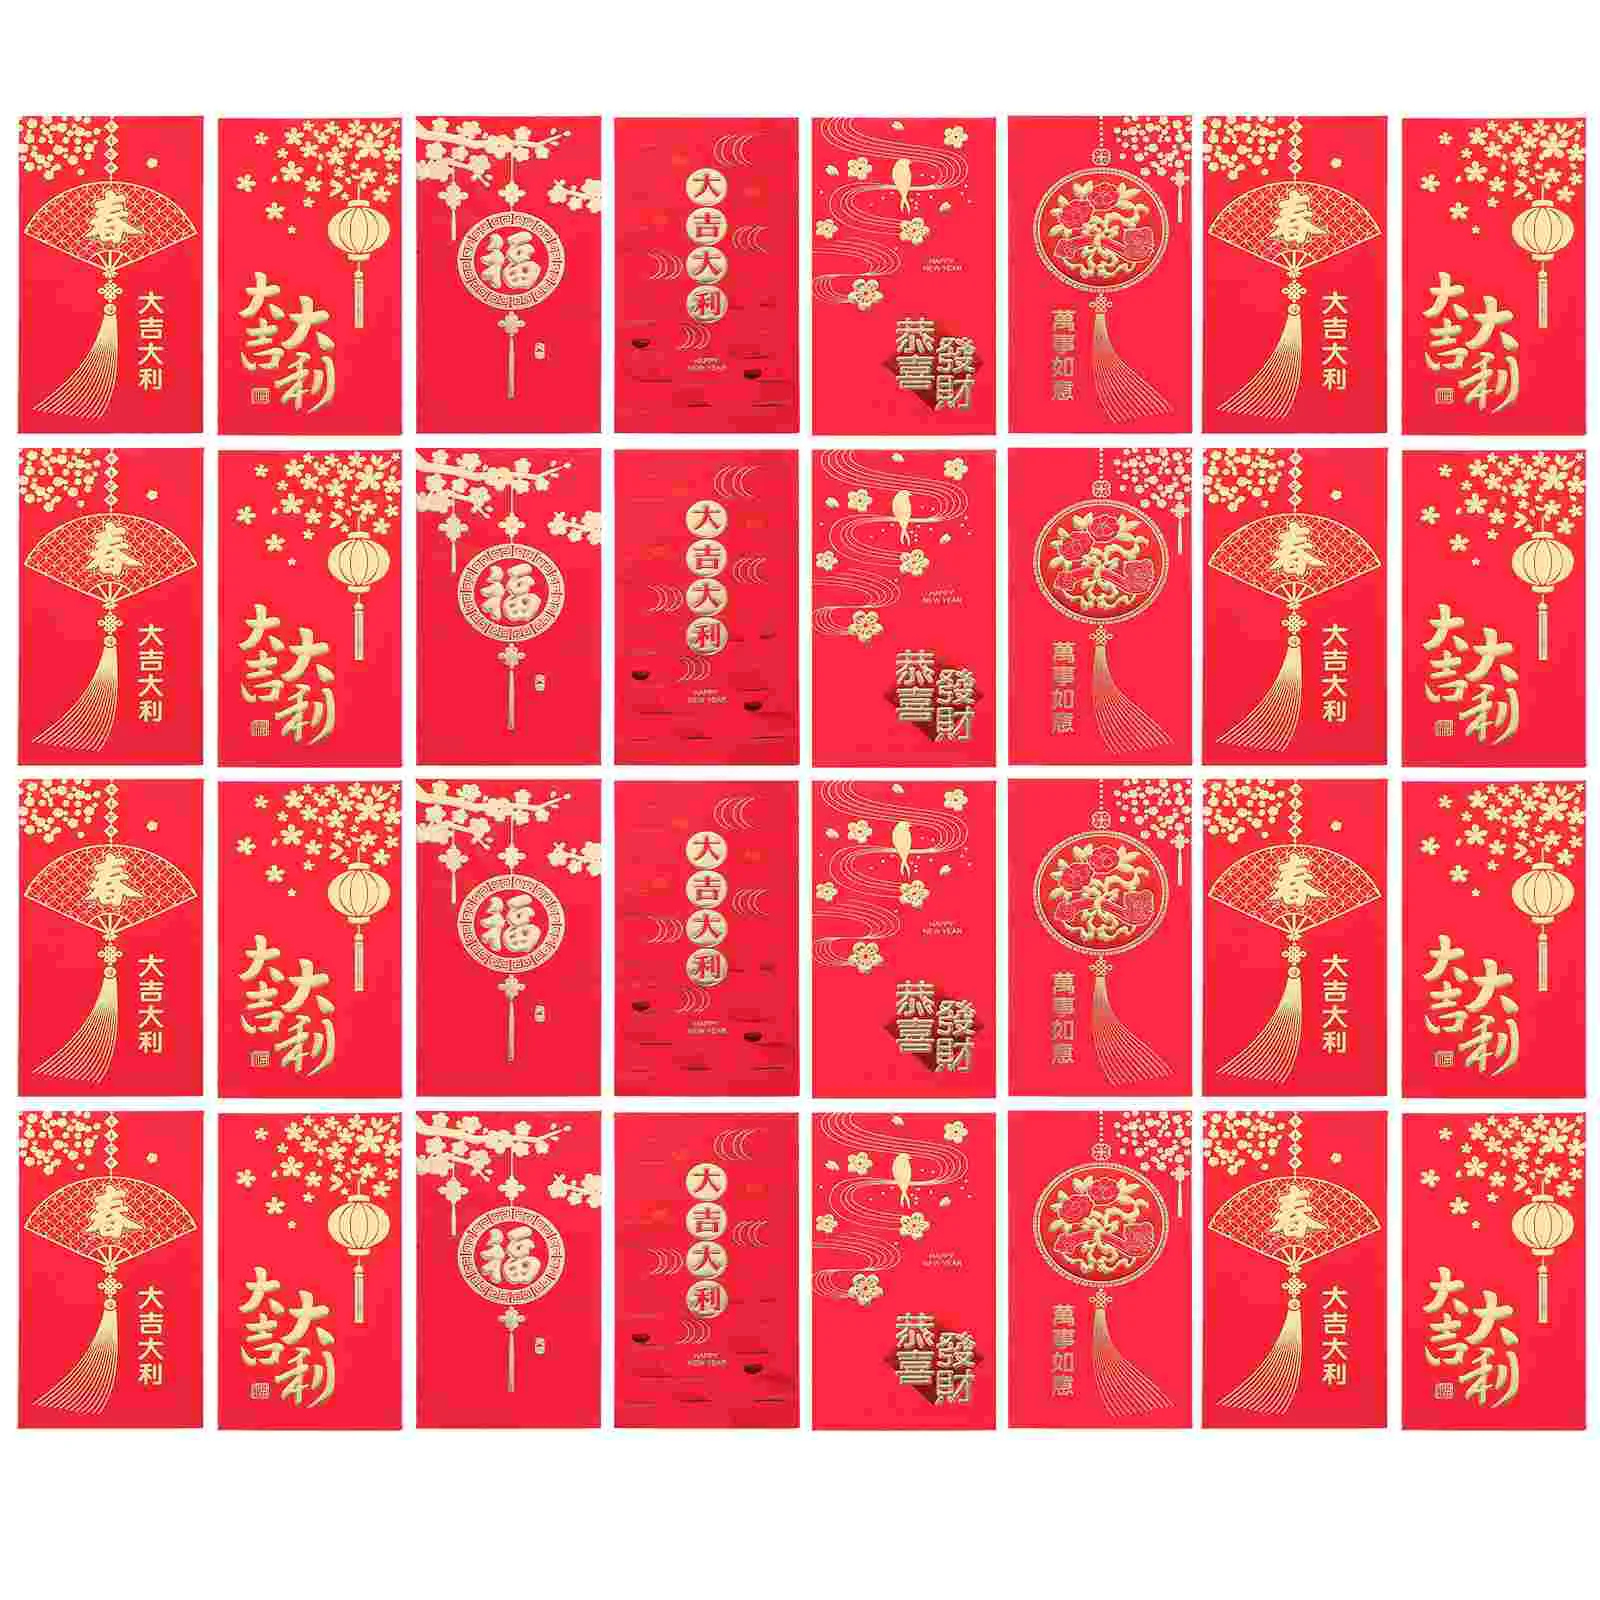 

Красный конверт с красным карманом для нового года, красные конверты для китайского Нового года, красная сумка, красные конверты для весны, фестиваля, свадьбы, дня рождения